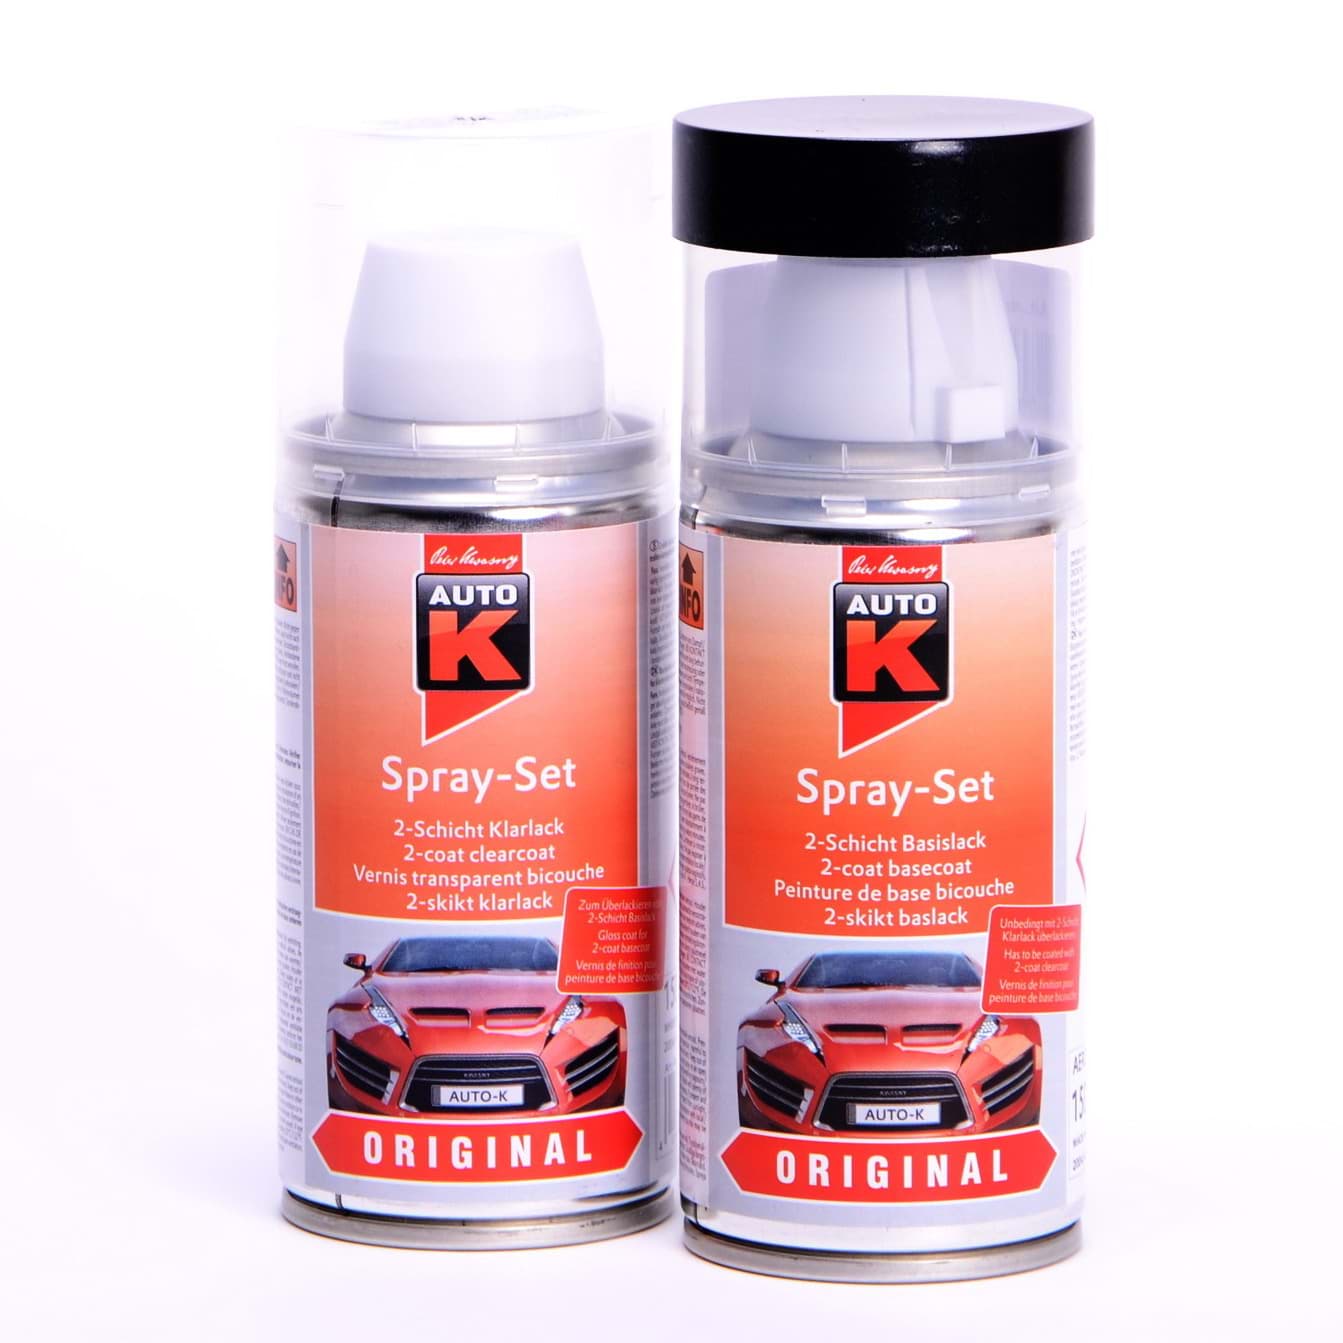 Afbeelding van Auto-K Spray-Set Autolack für Volkswagen, VW, Audi LZ9U Vulkanschwarz perl met 20756